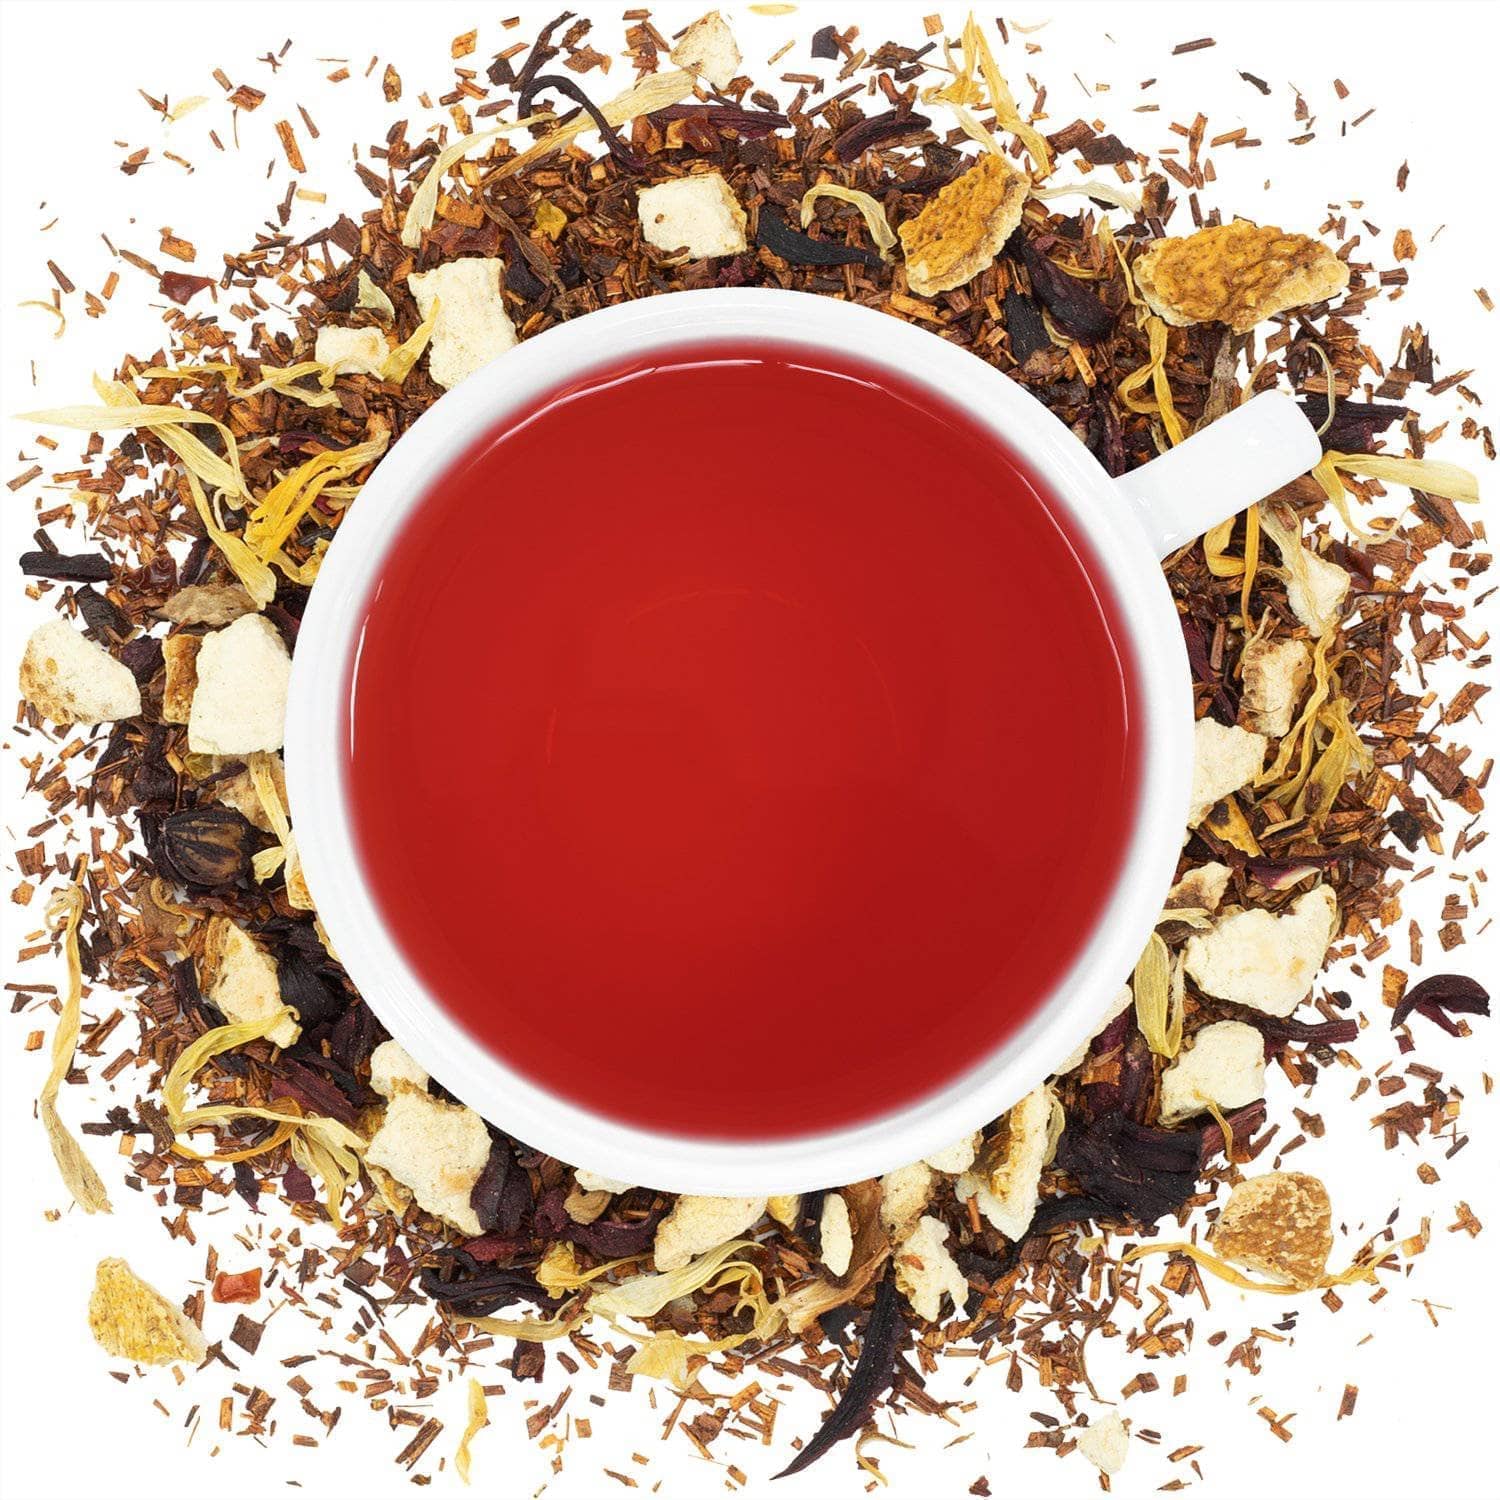 Organic Blood Orange Rooibos - Loose Leaf Tea - Full Leaf Tea Company